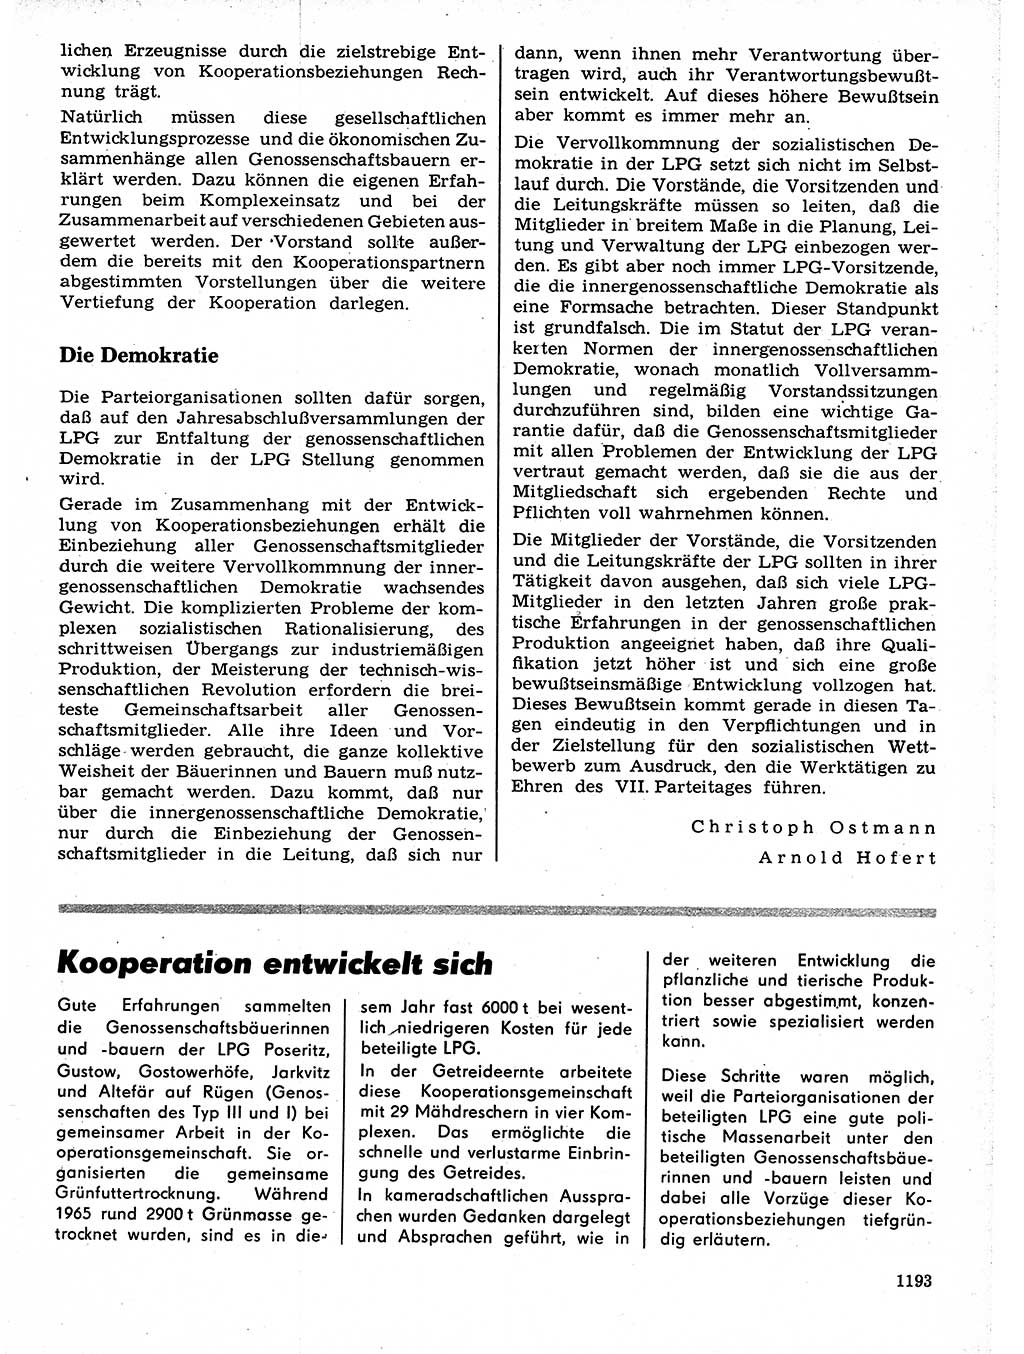 Neuer Weg (NW), Organ des Zentralkomitees (ZK) der SED (Sozialistische Einheitspartei Deutschlands) für Fragen des Parteilebens, 21. Jahrgang [Deutsche Demokratische Republik (DDR)] 1966, Seite 1193 (NW ZK SED DDR 1966, S. 1193)